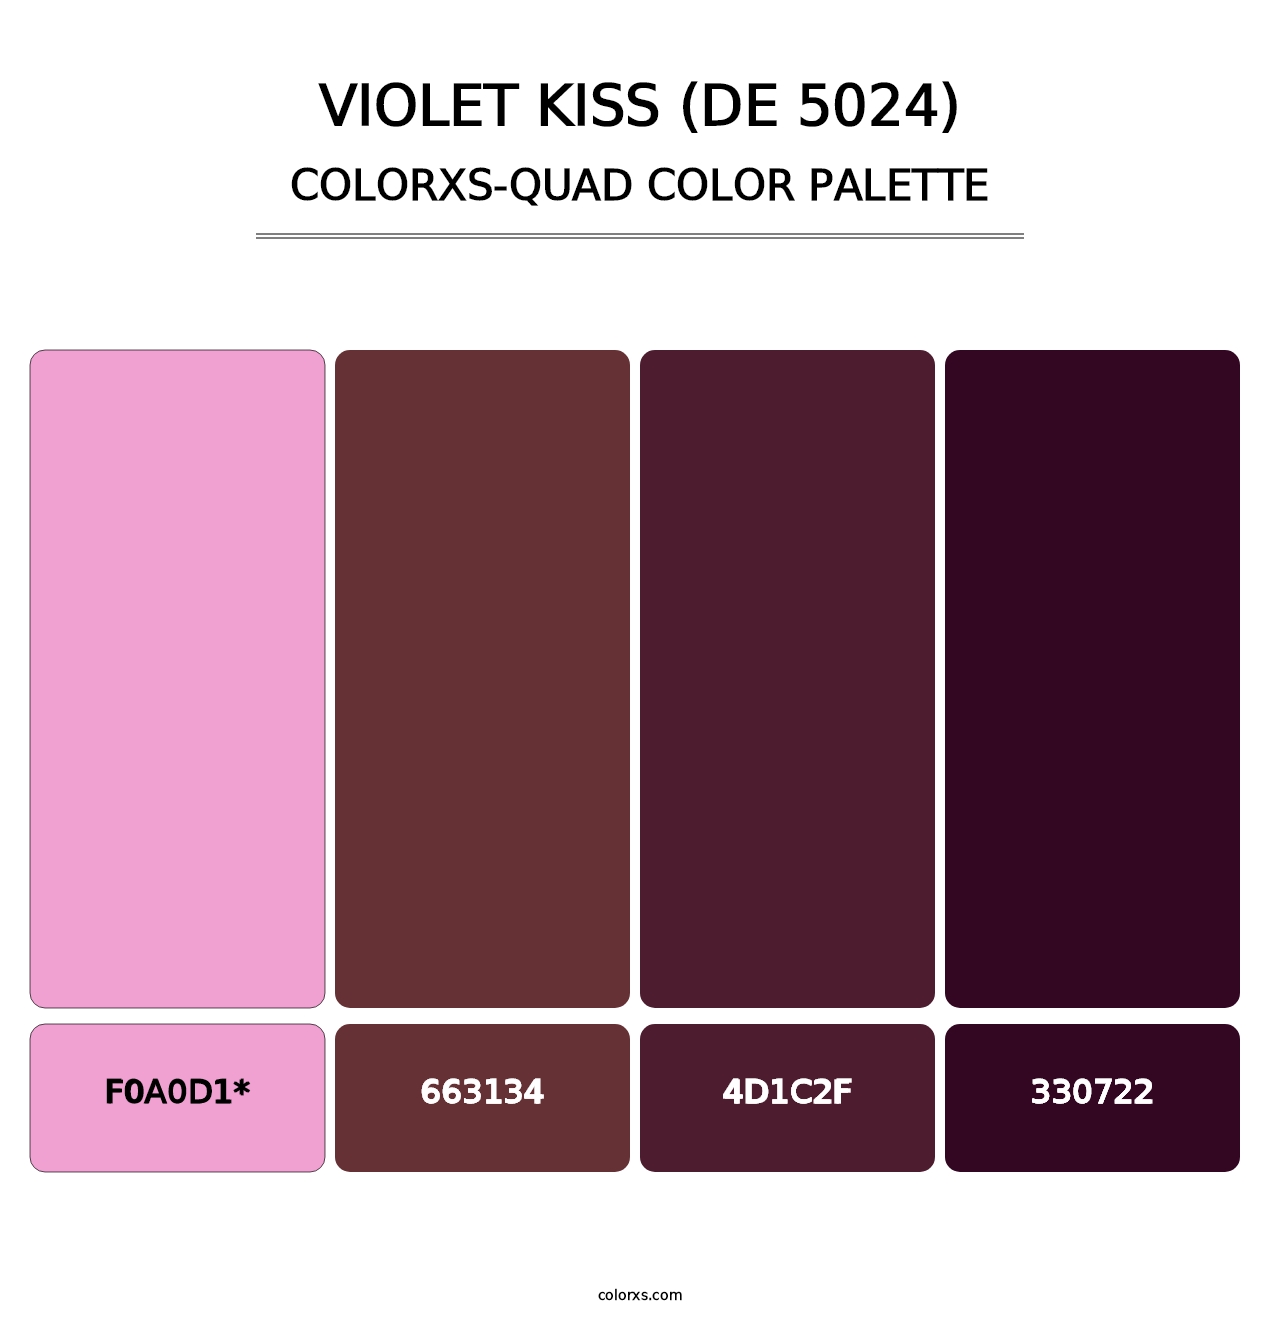 Violet Kiss (DE 5024) - Colorxs Quad Palette